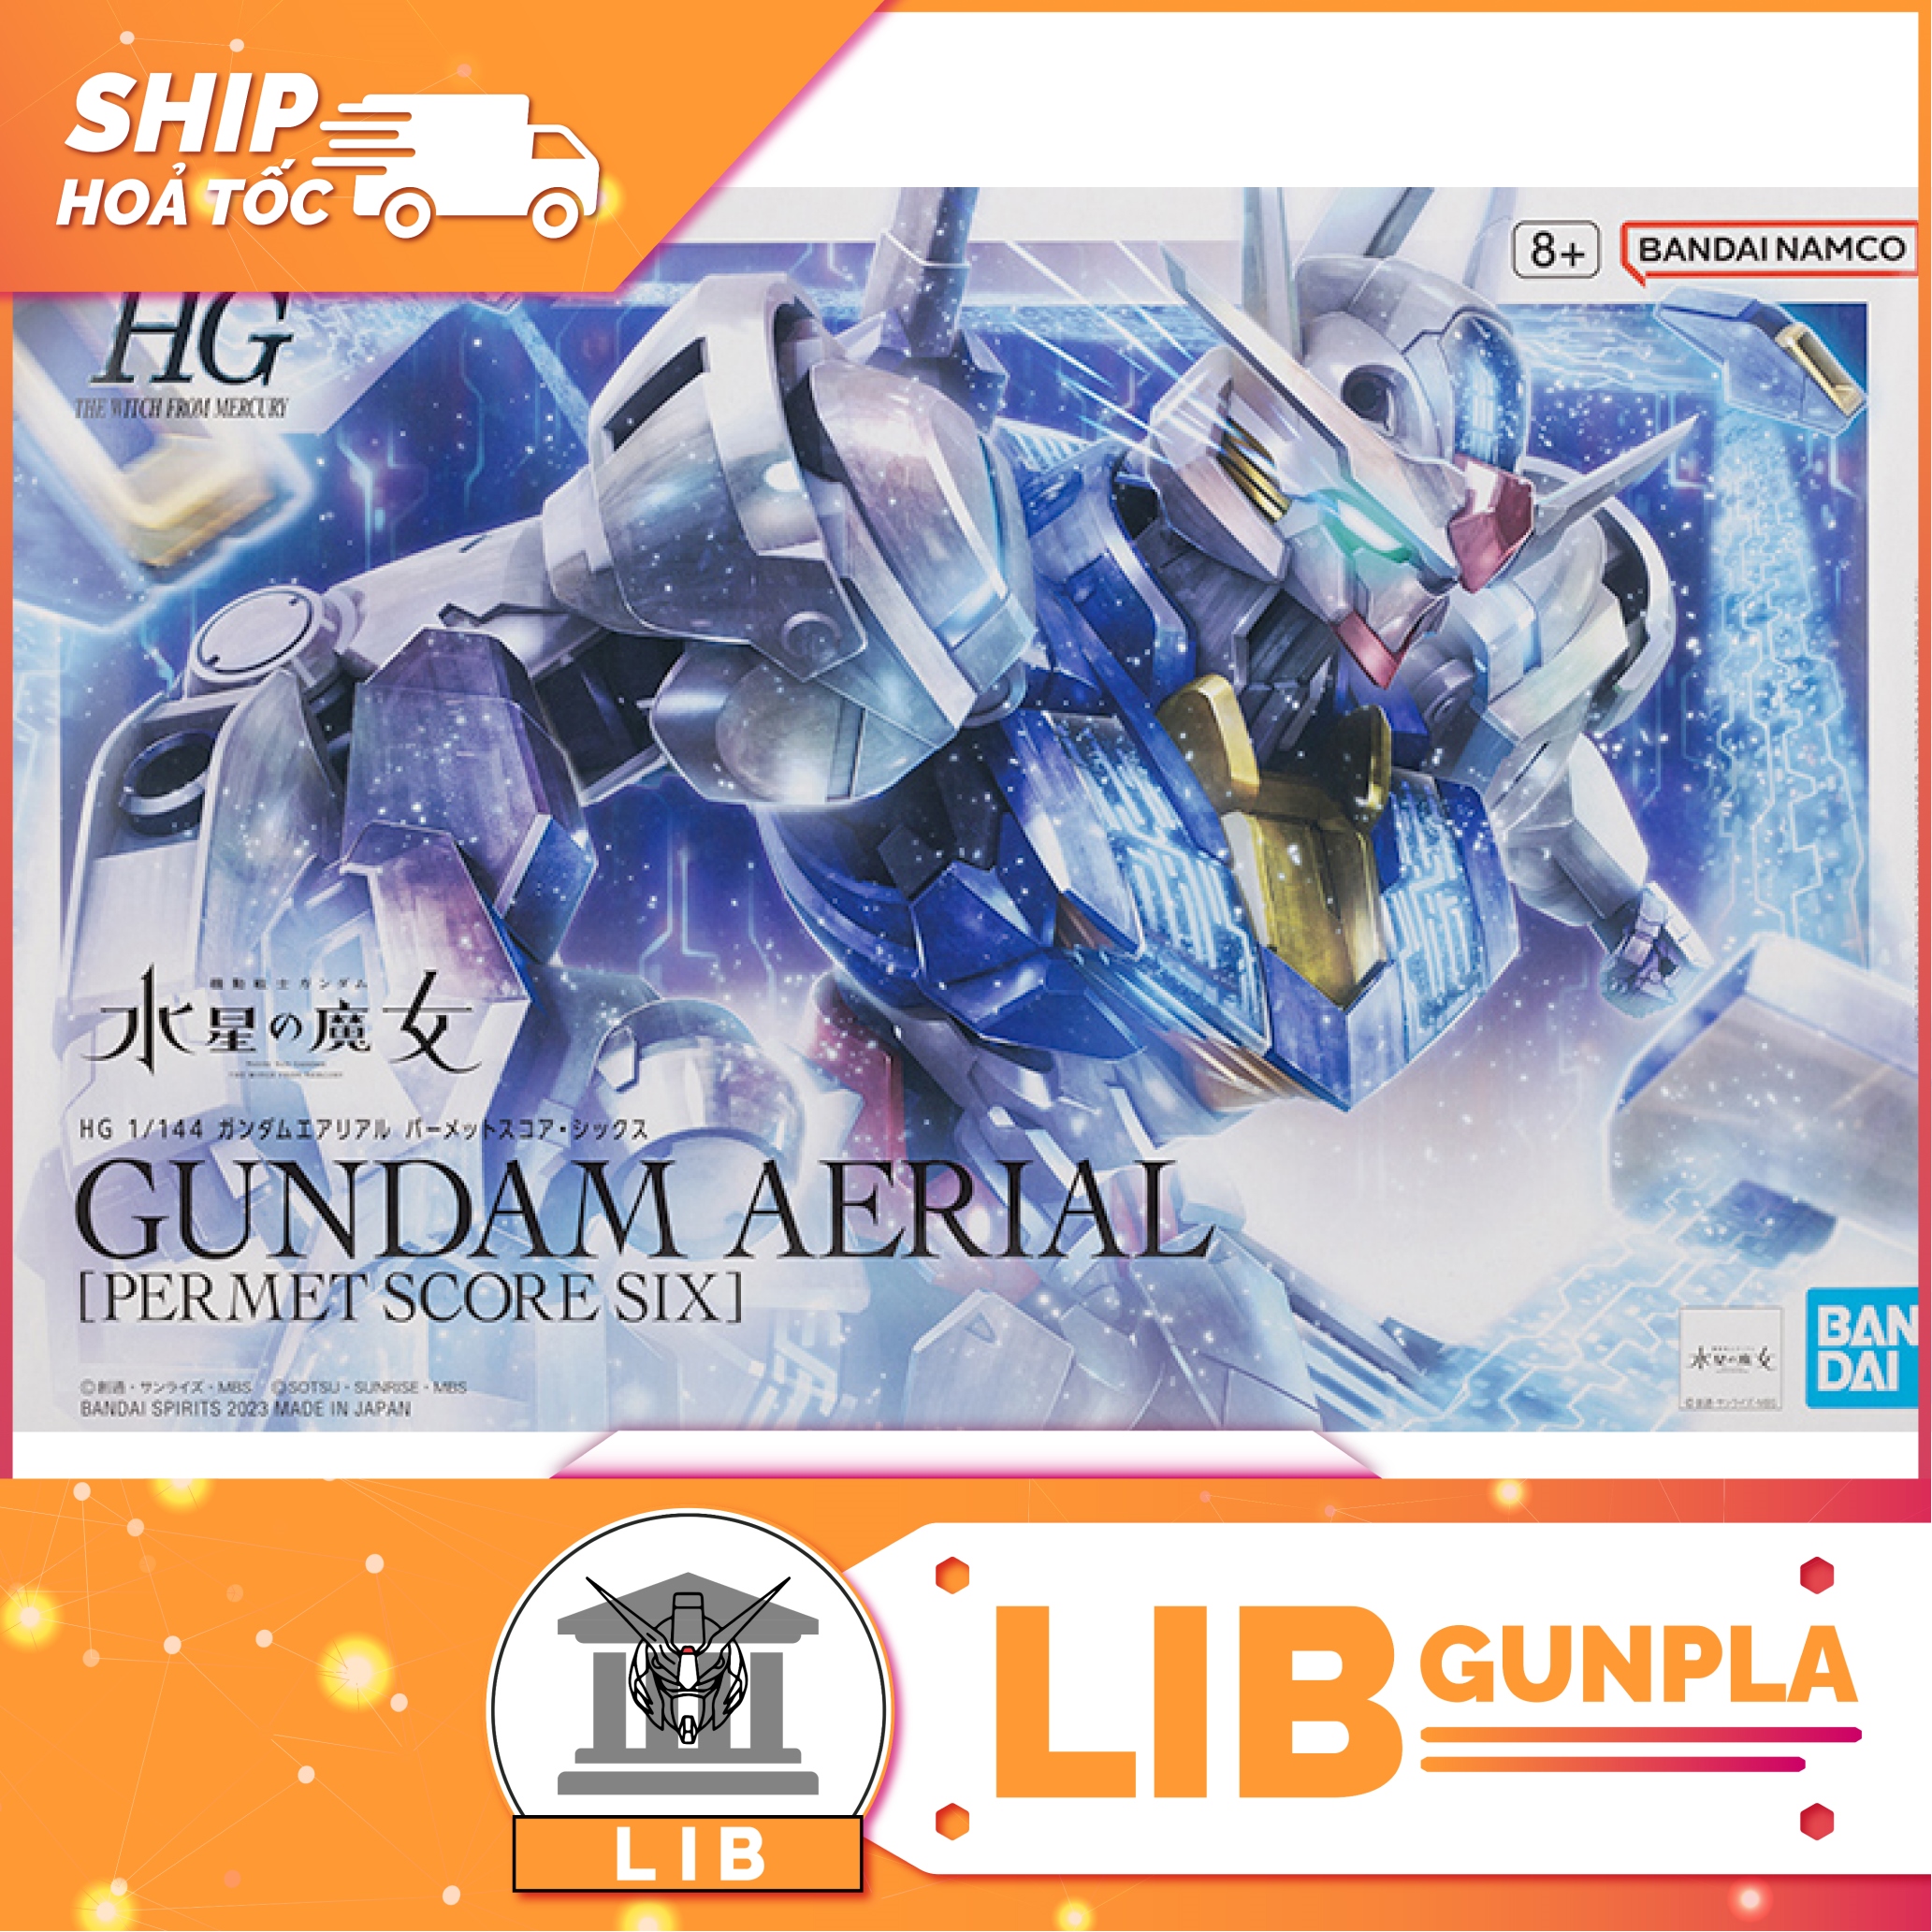 Model assembled Bandai HG WFM Aerial Gundam Permet Score Six P-Bandai